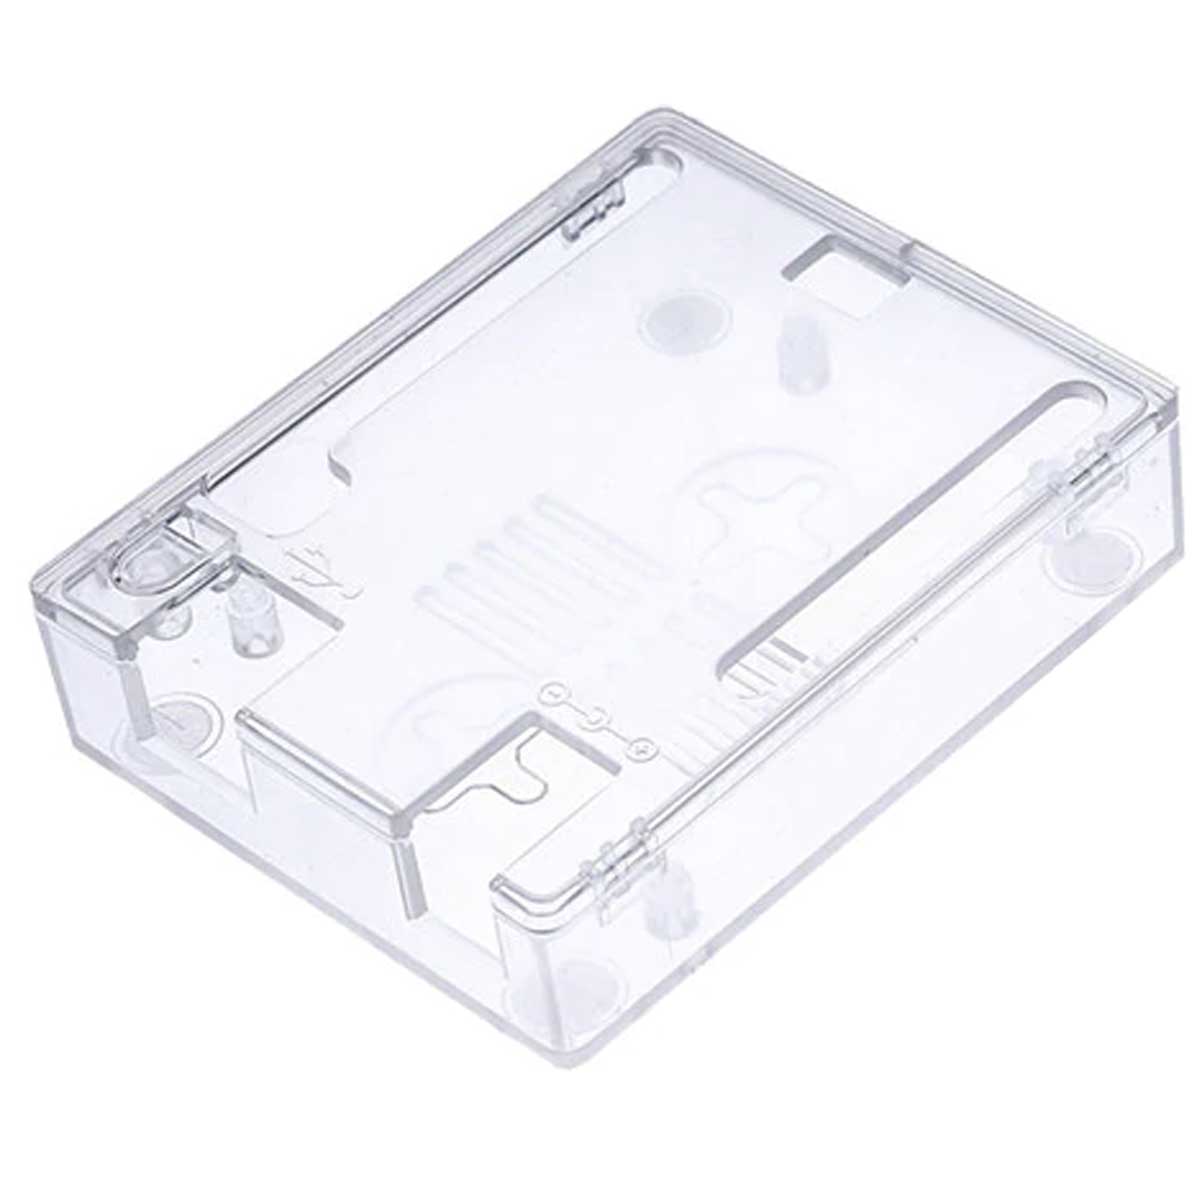 Case para Arduino Uno em Plástico ABS Transparente